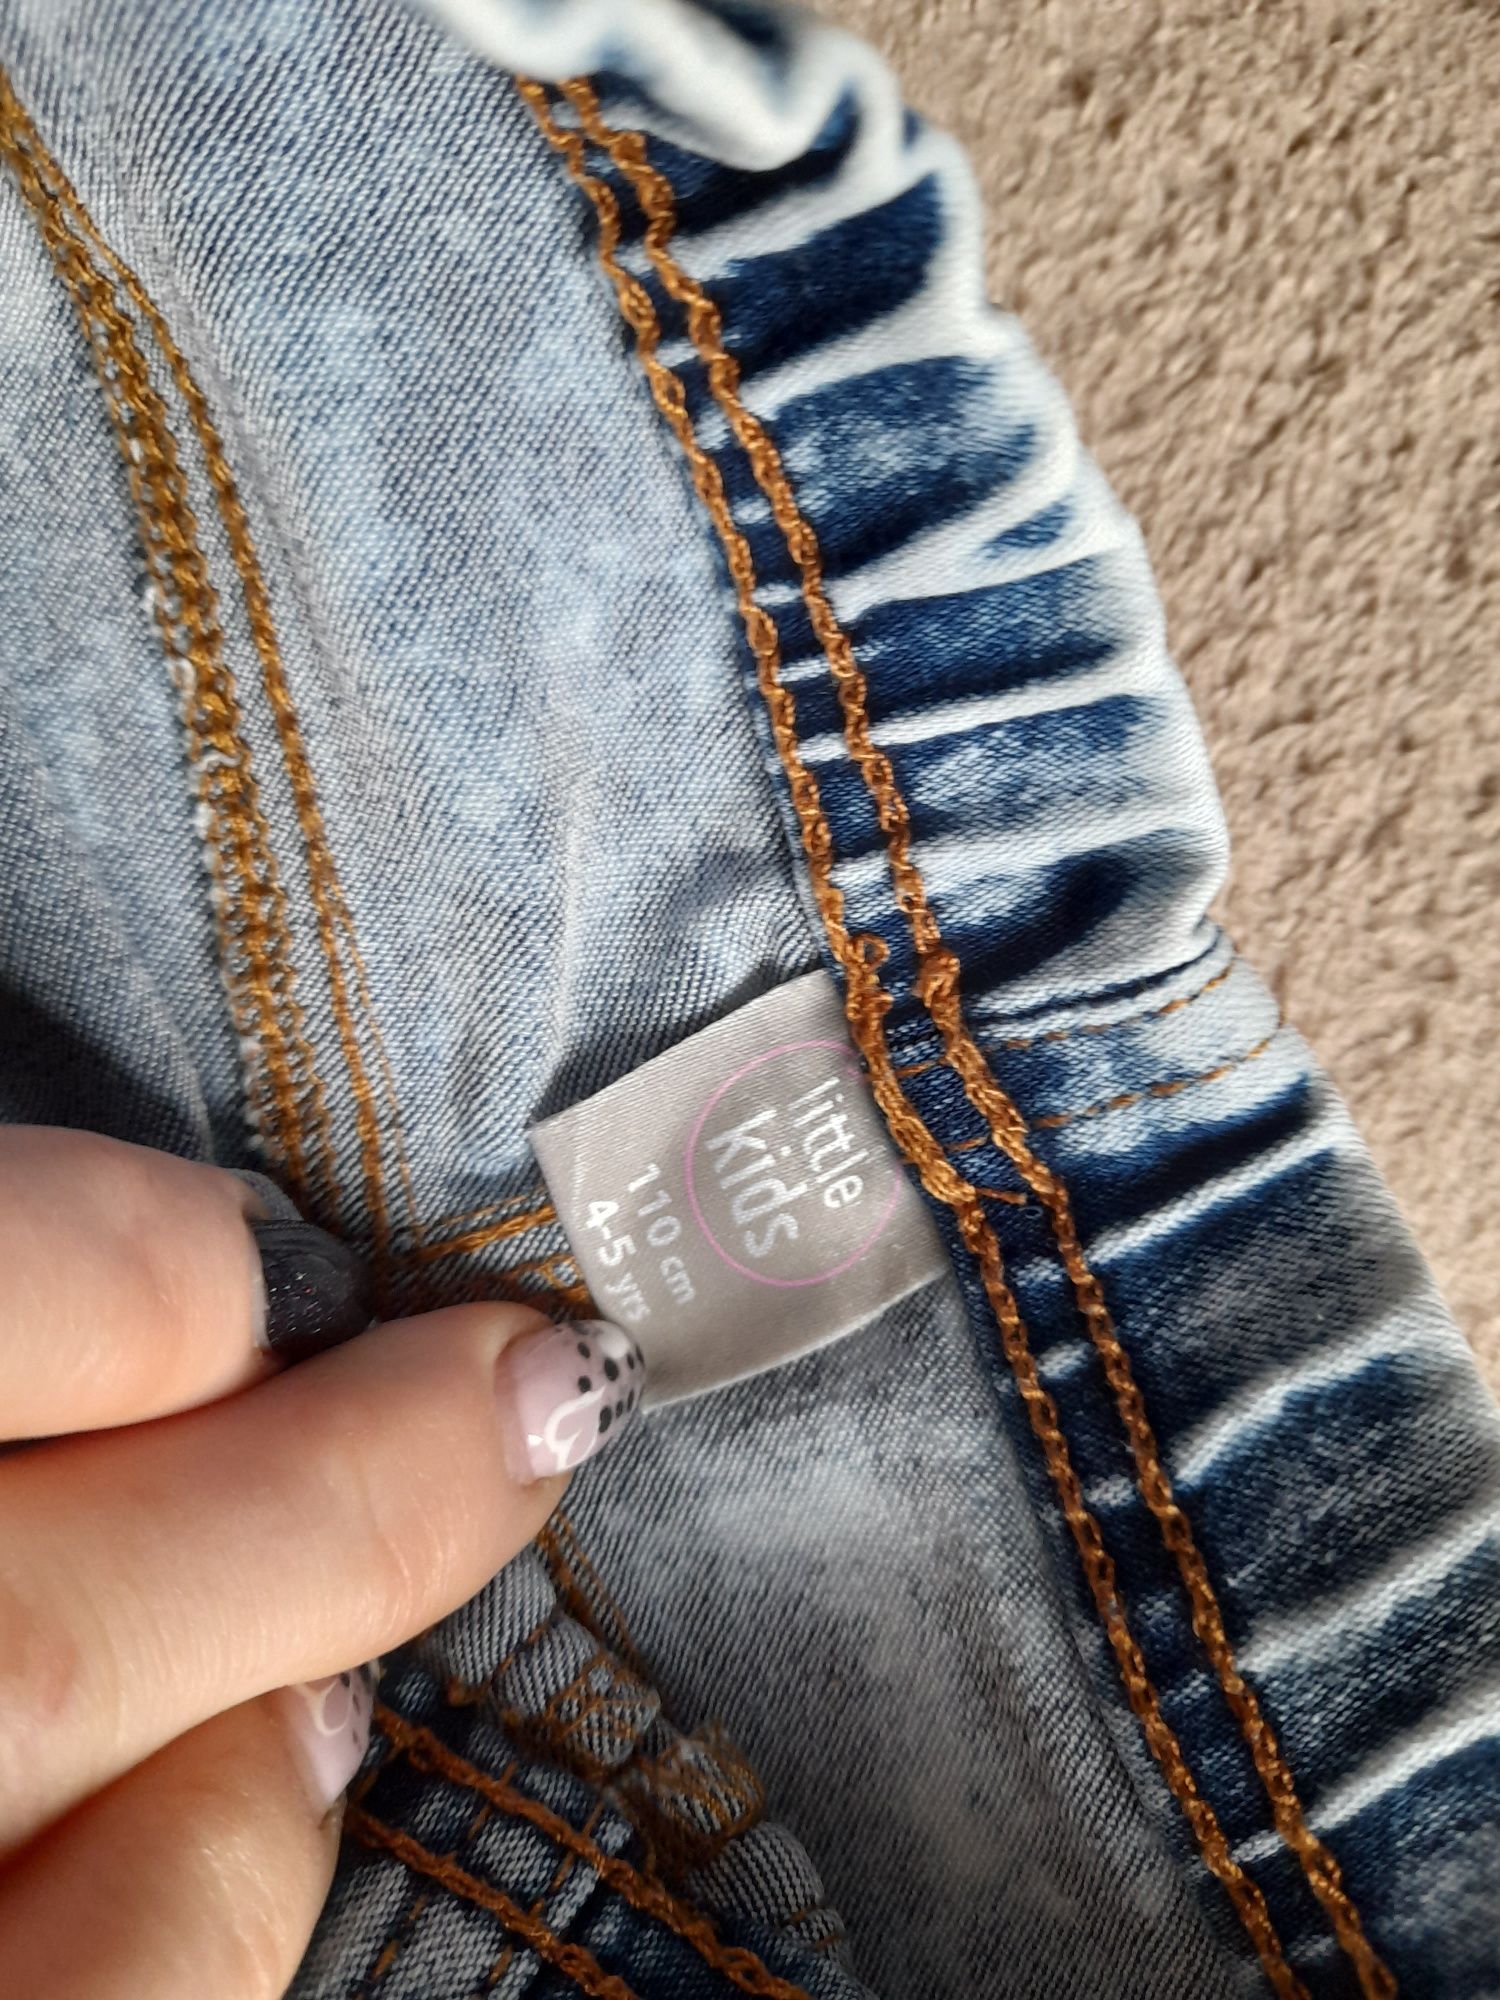 Spodnie jeansy treginsy 4-5 lat